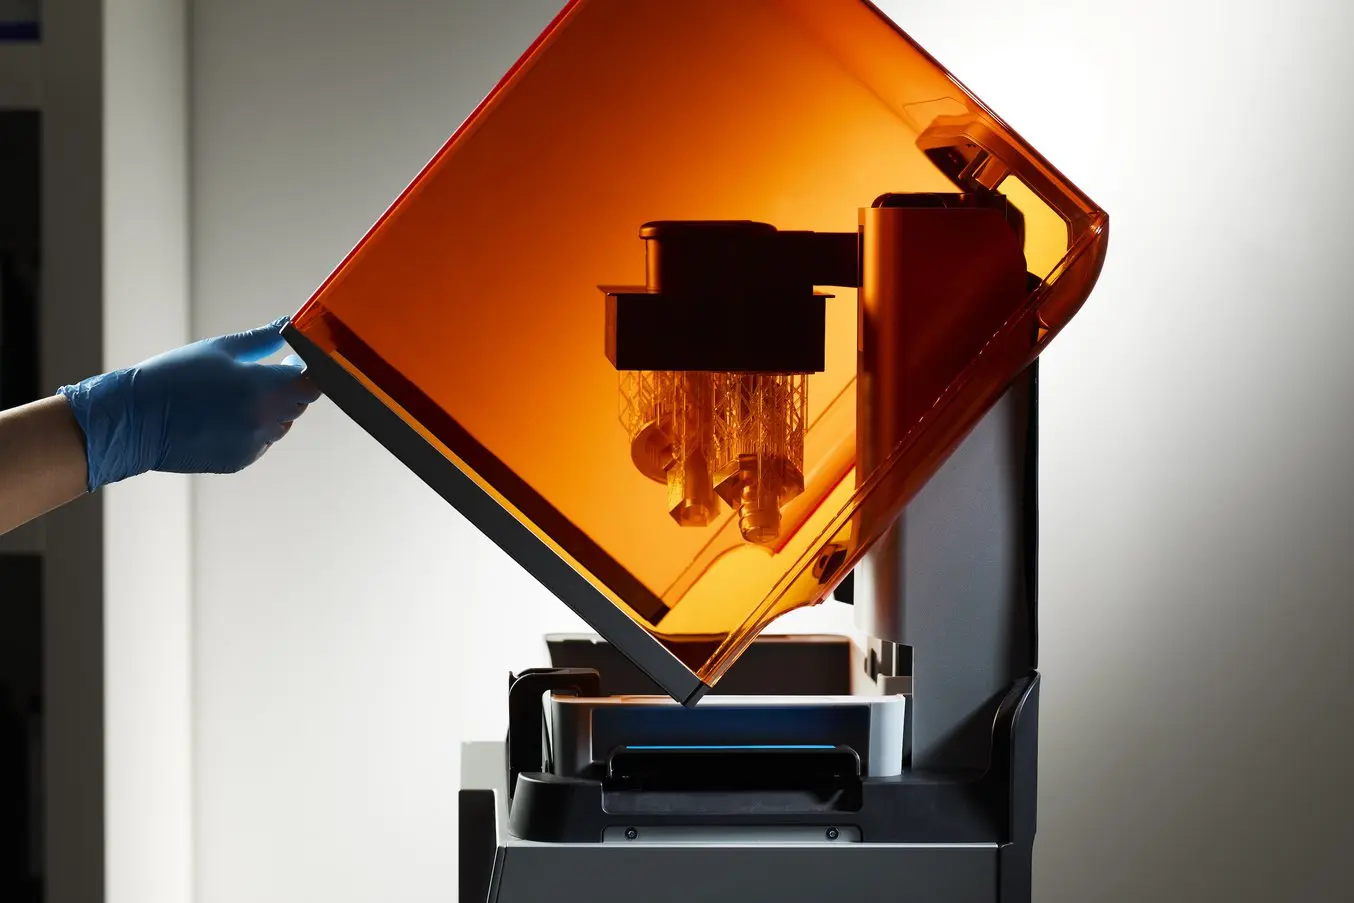 Form 4 3D 프린터의 오렌지색 커버를 들어올리는 파란 장갑을 낀 손